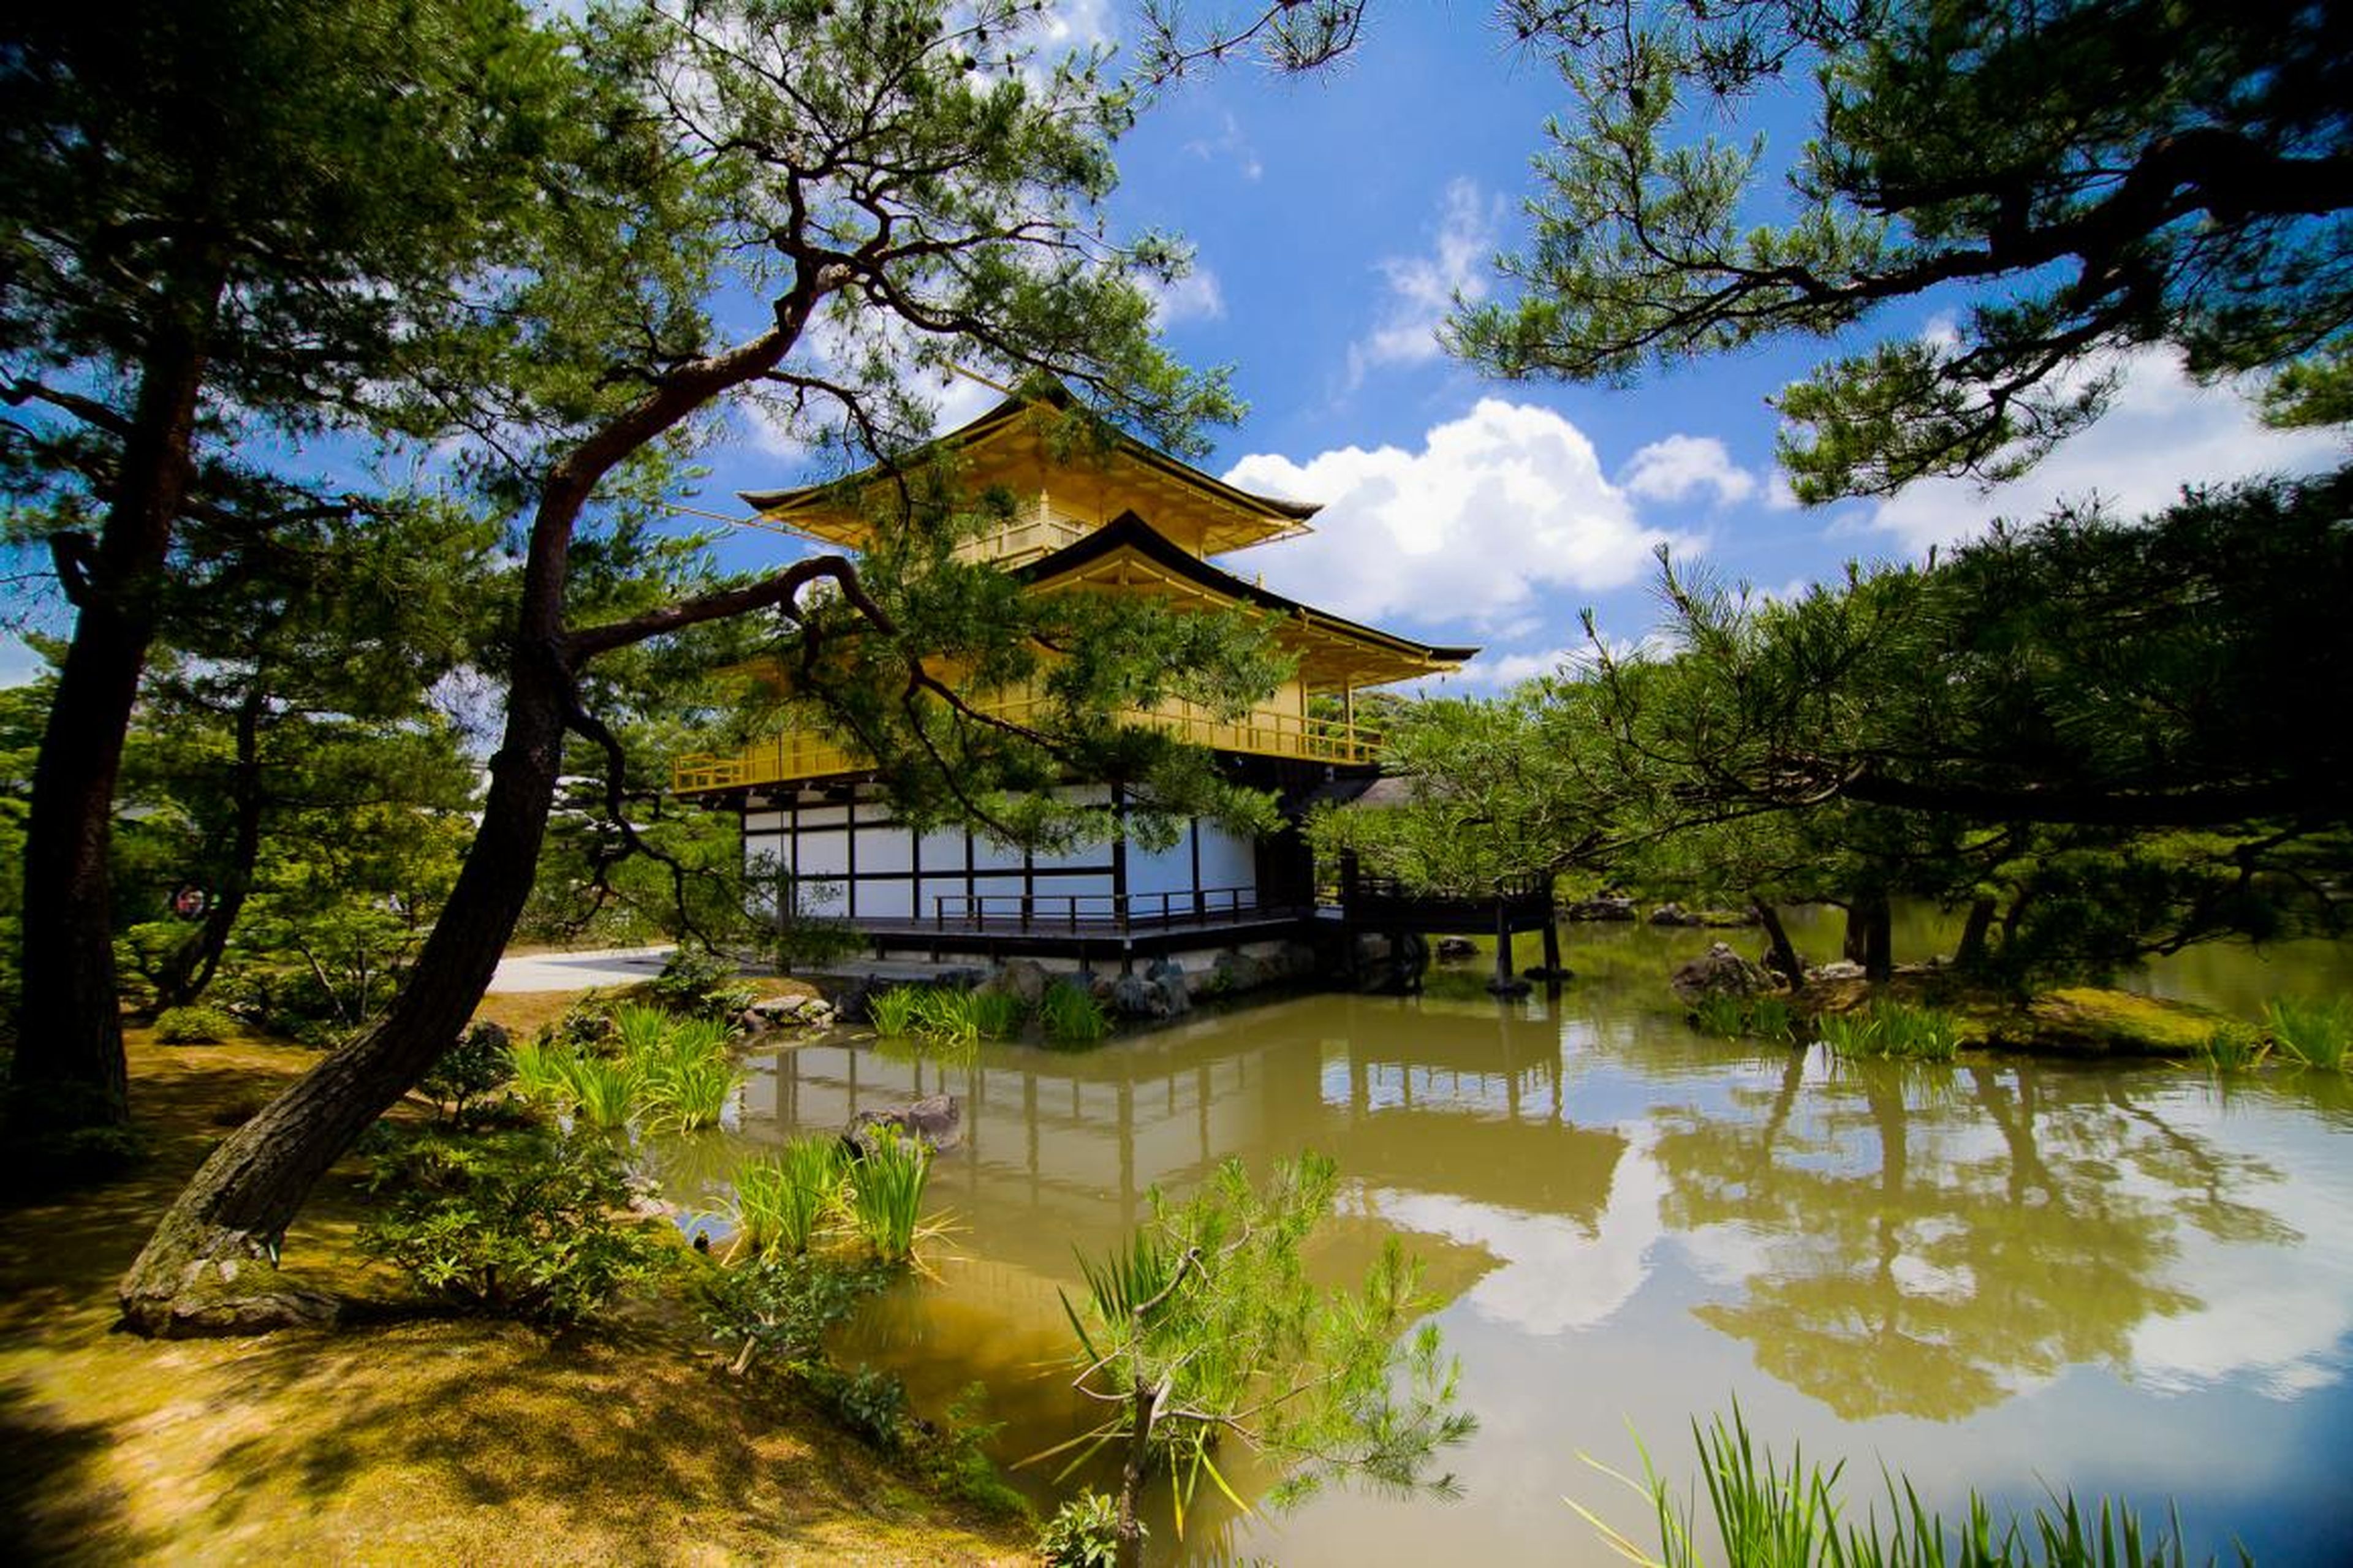 La integración en el entorno es uno de los ideales más antiguos de la arquitectura. La antigua capital japonesa, Kioto, cuenta con el impresionante Pabellón Dorado...